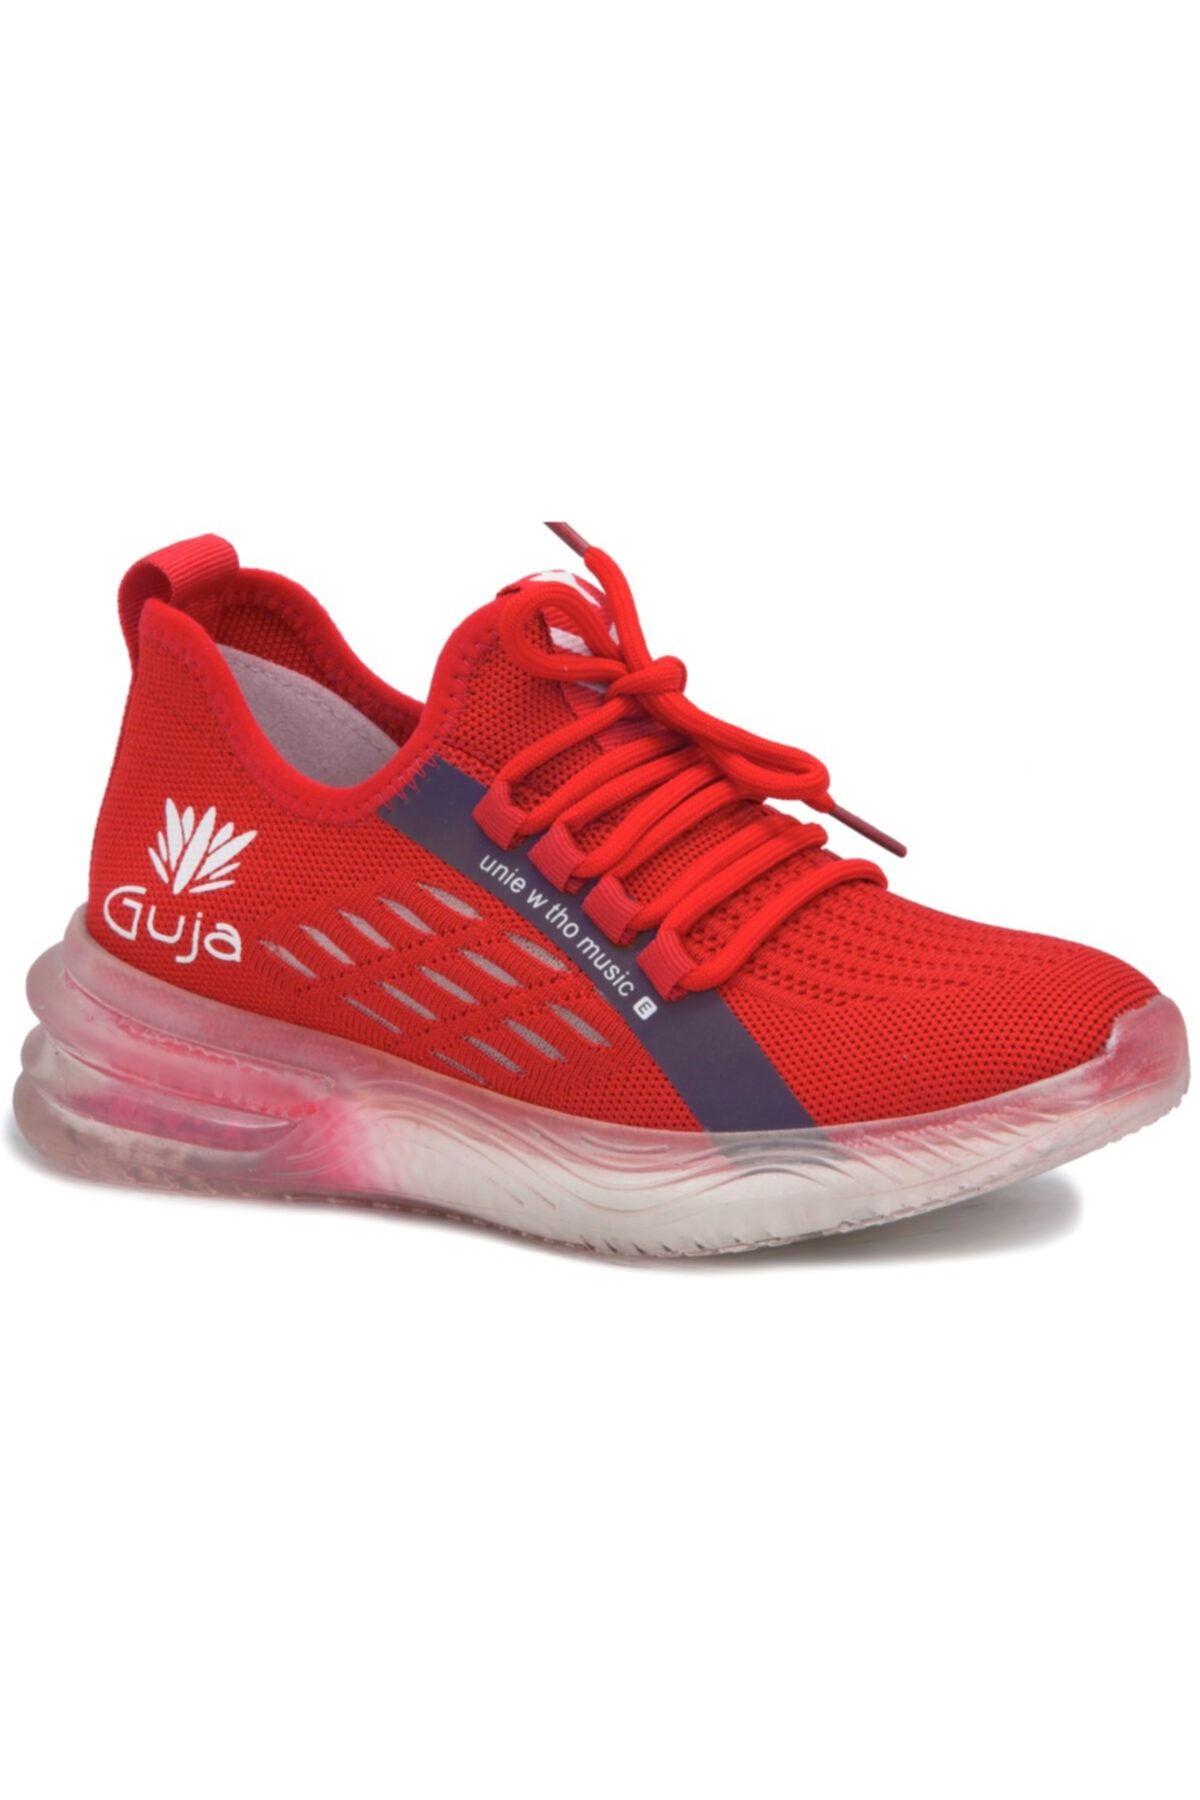 Guja Kadın Kırmızı Casual Ayakkabı-Gj21y313